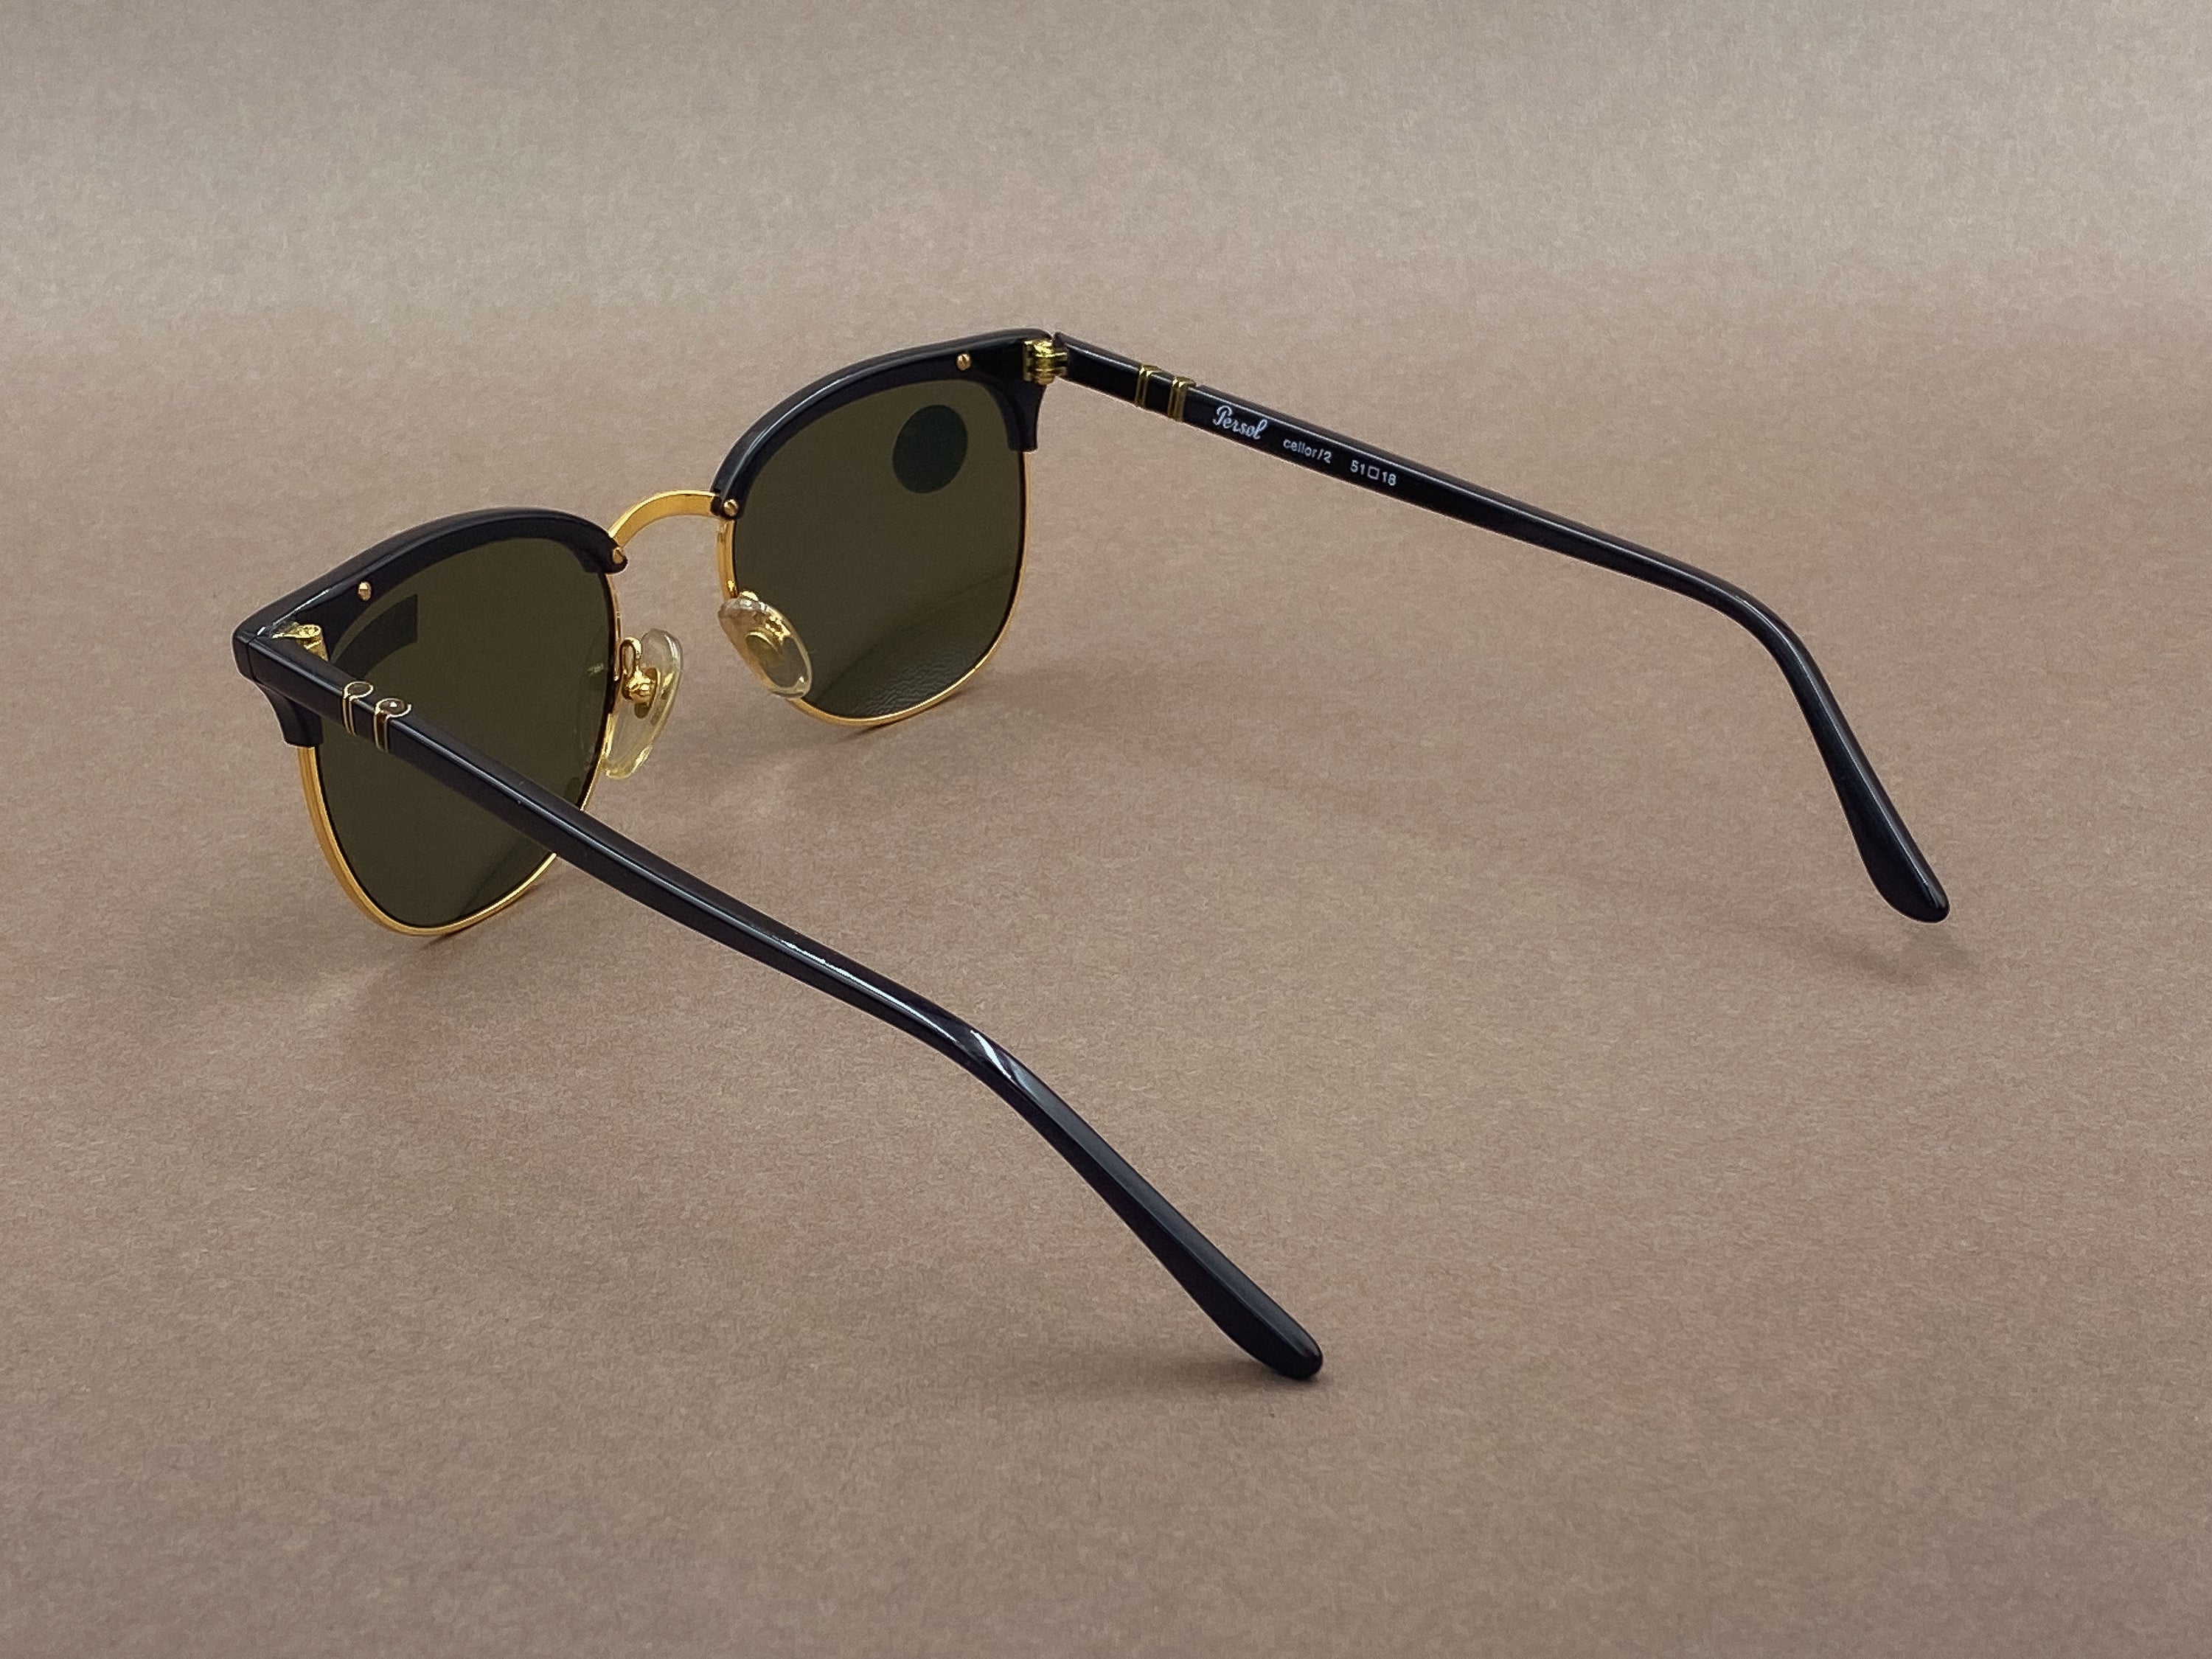 Persol Ratti Cellor /2 sunglasses